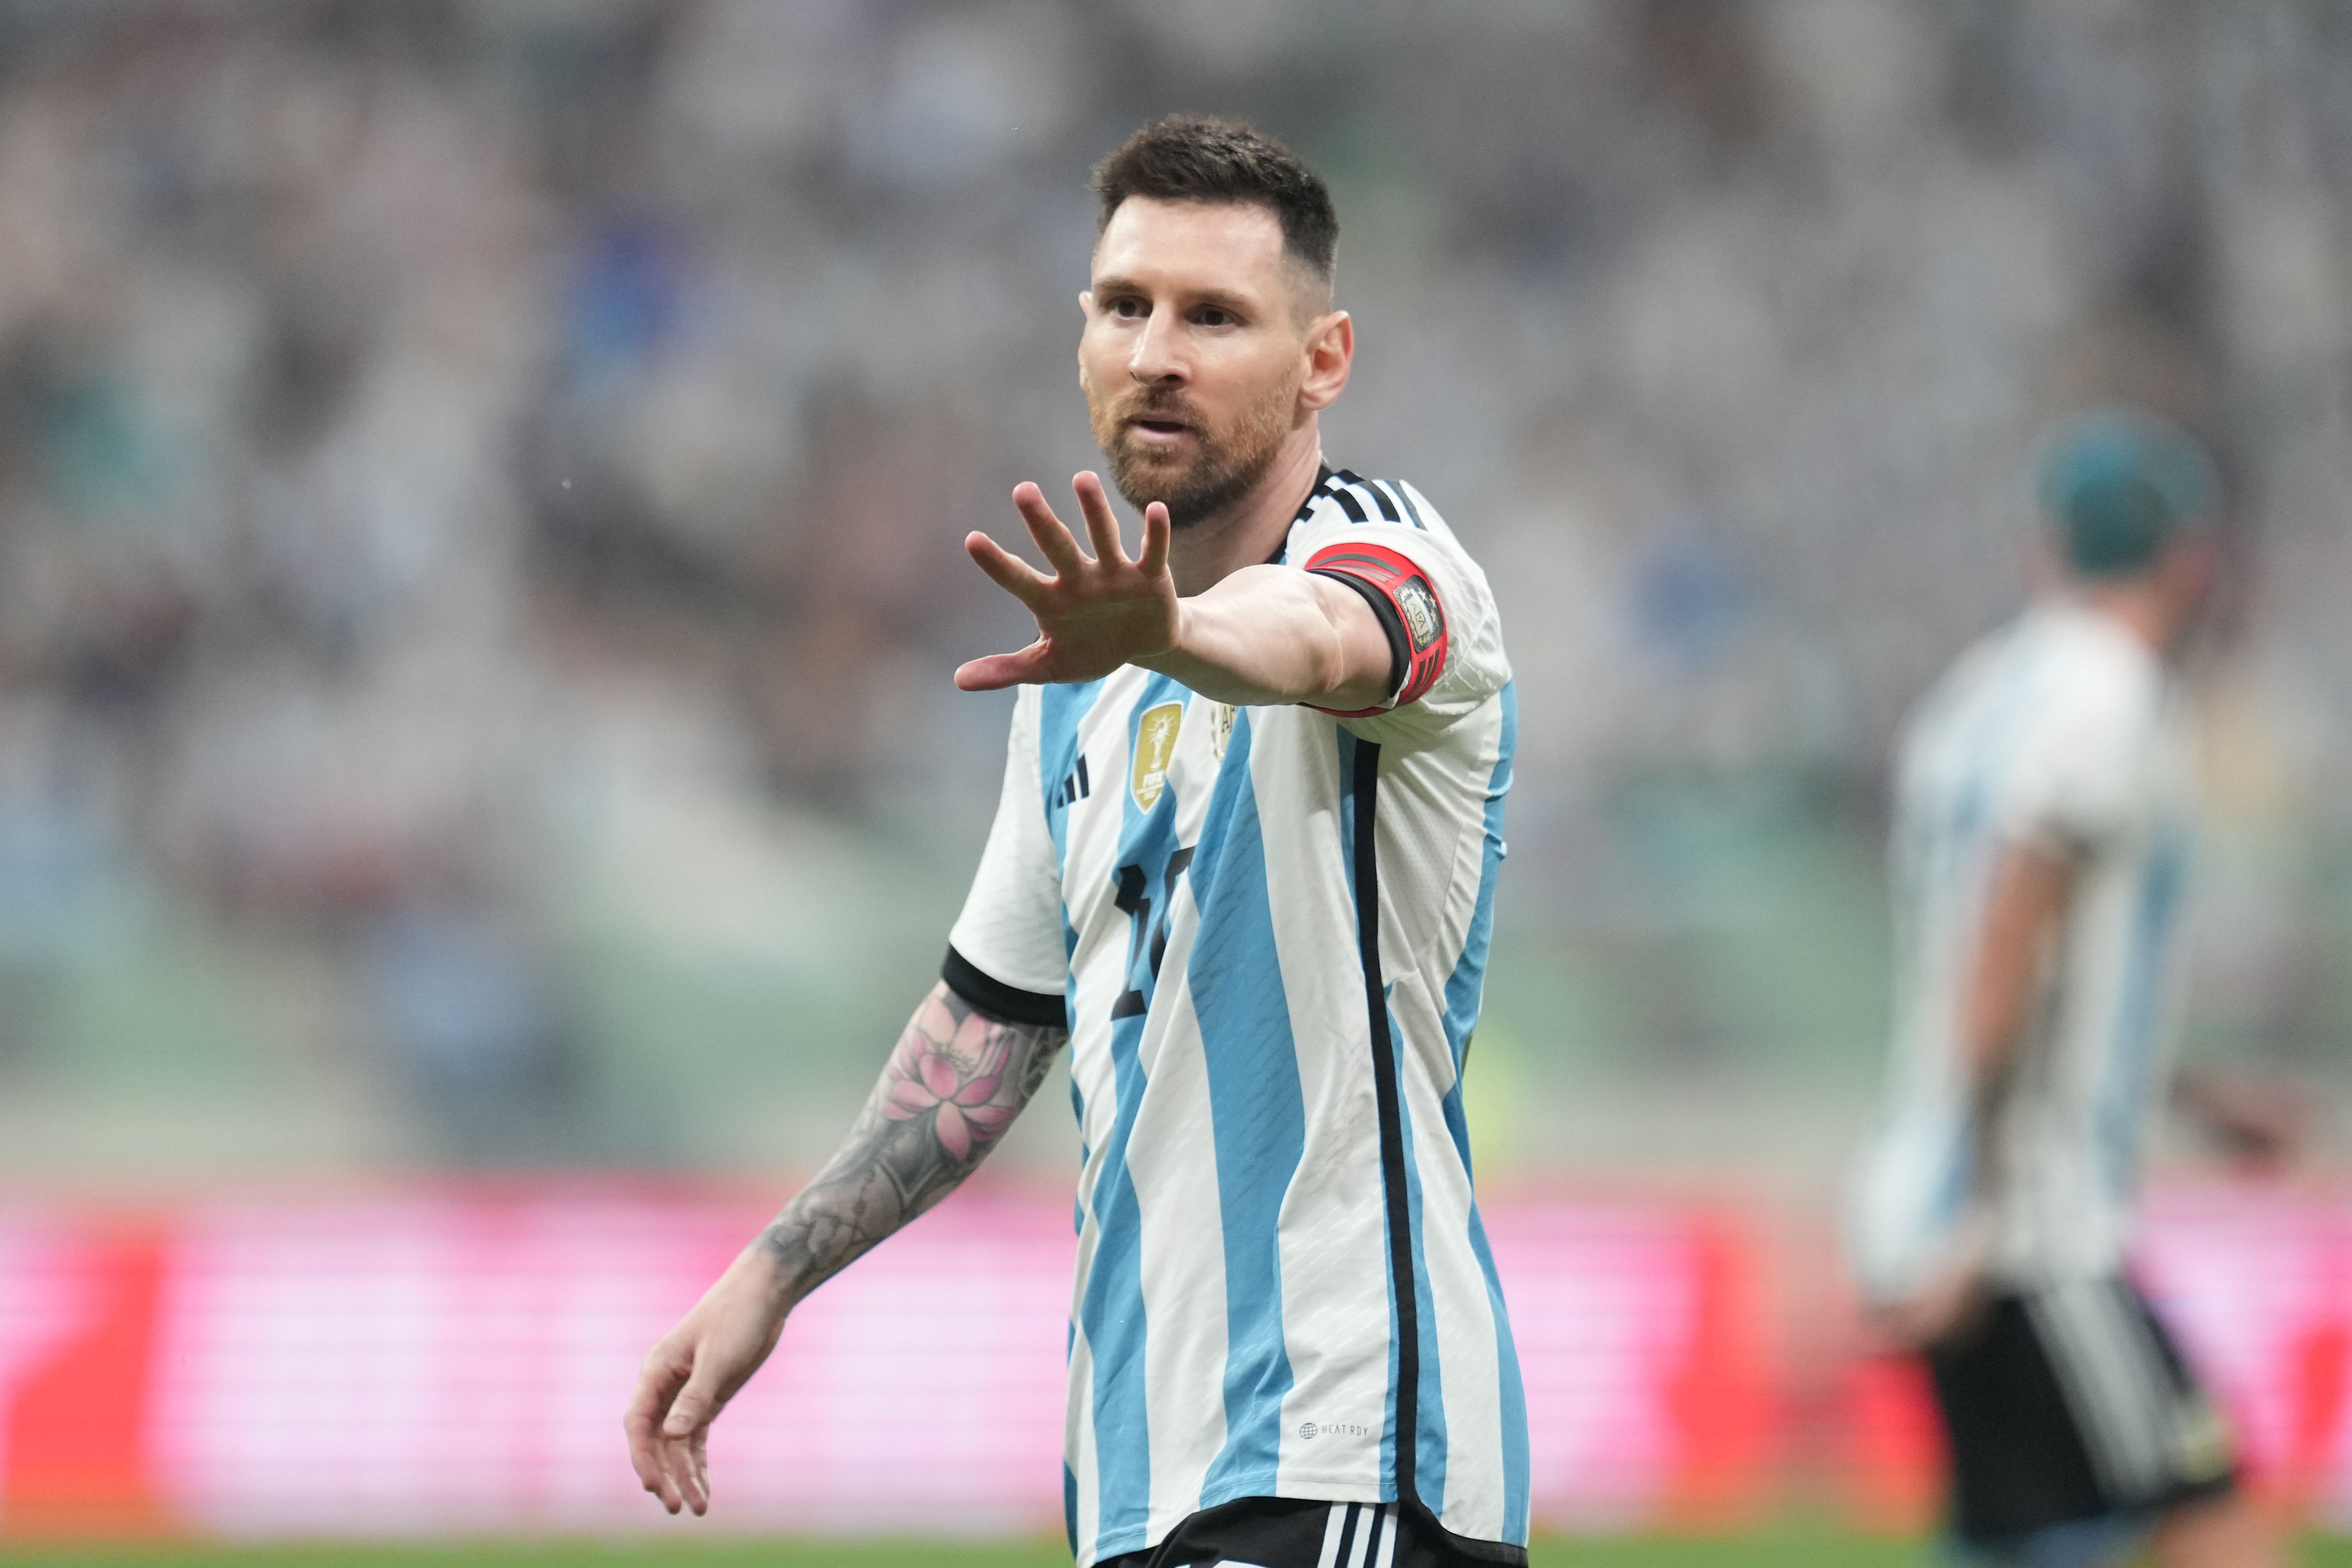 Lionel Messi captaining Argentina